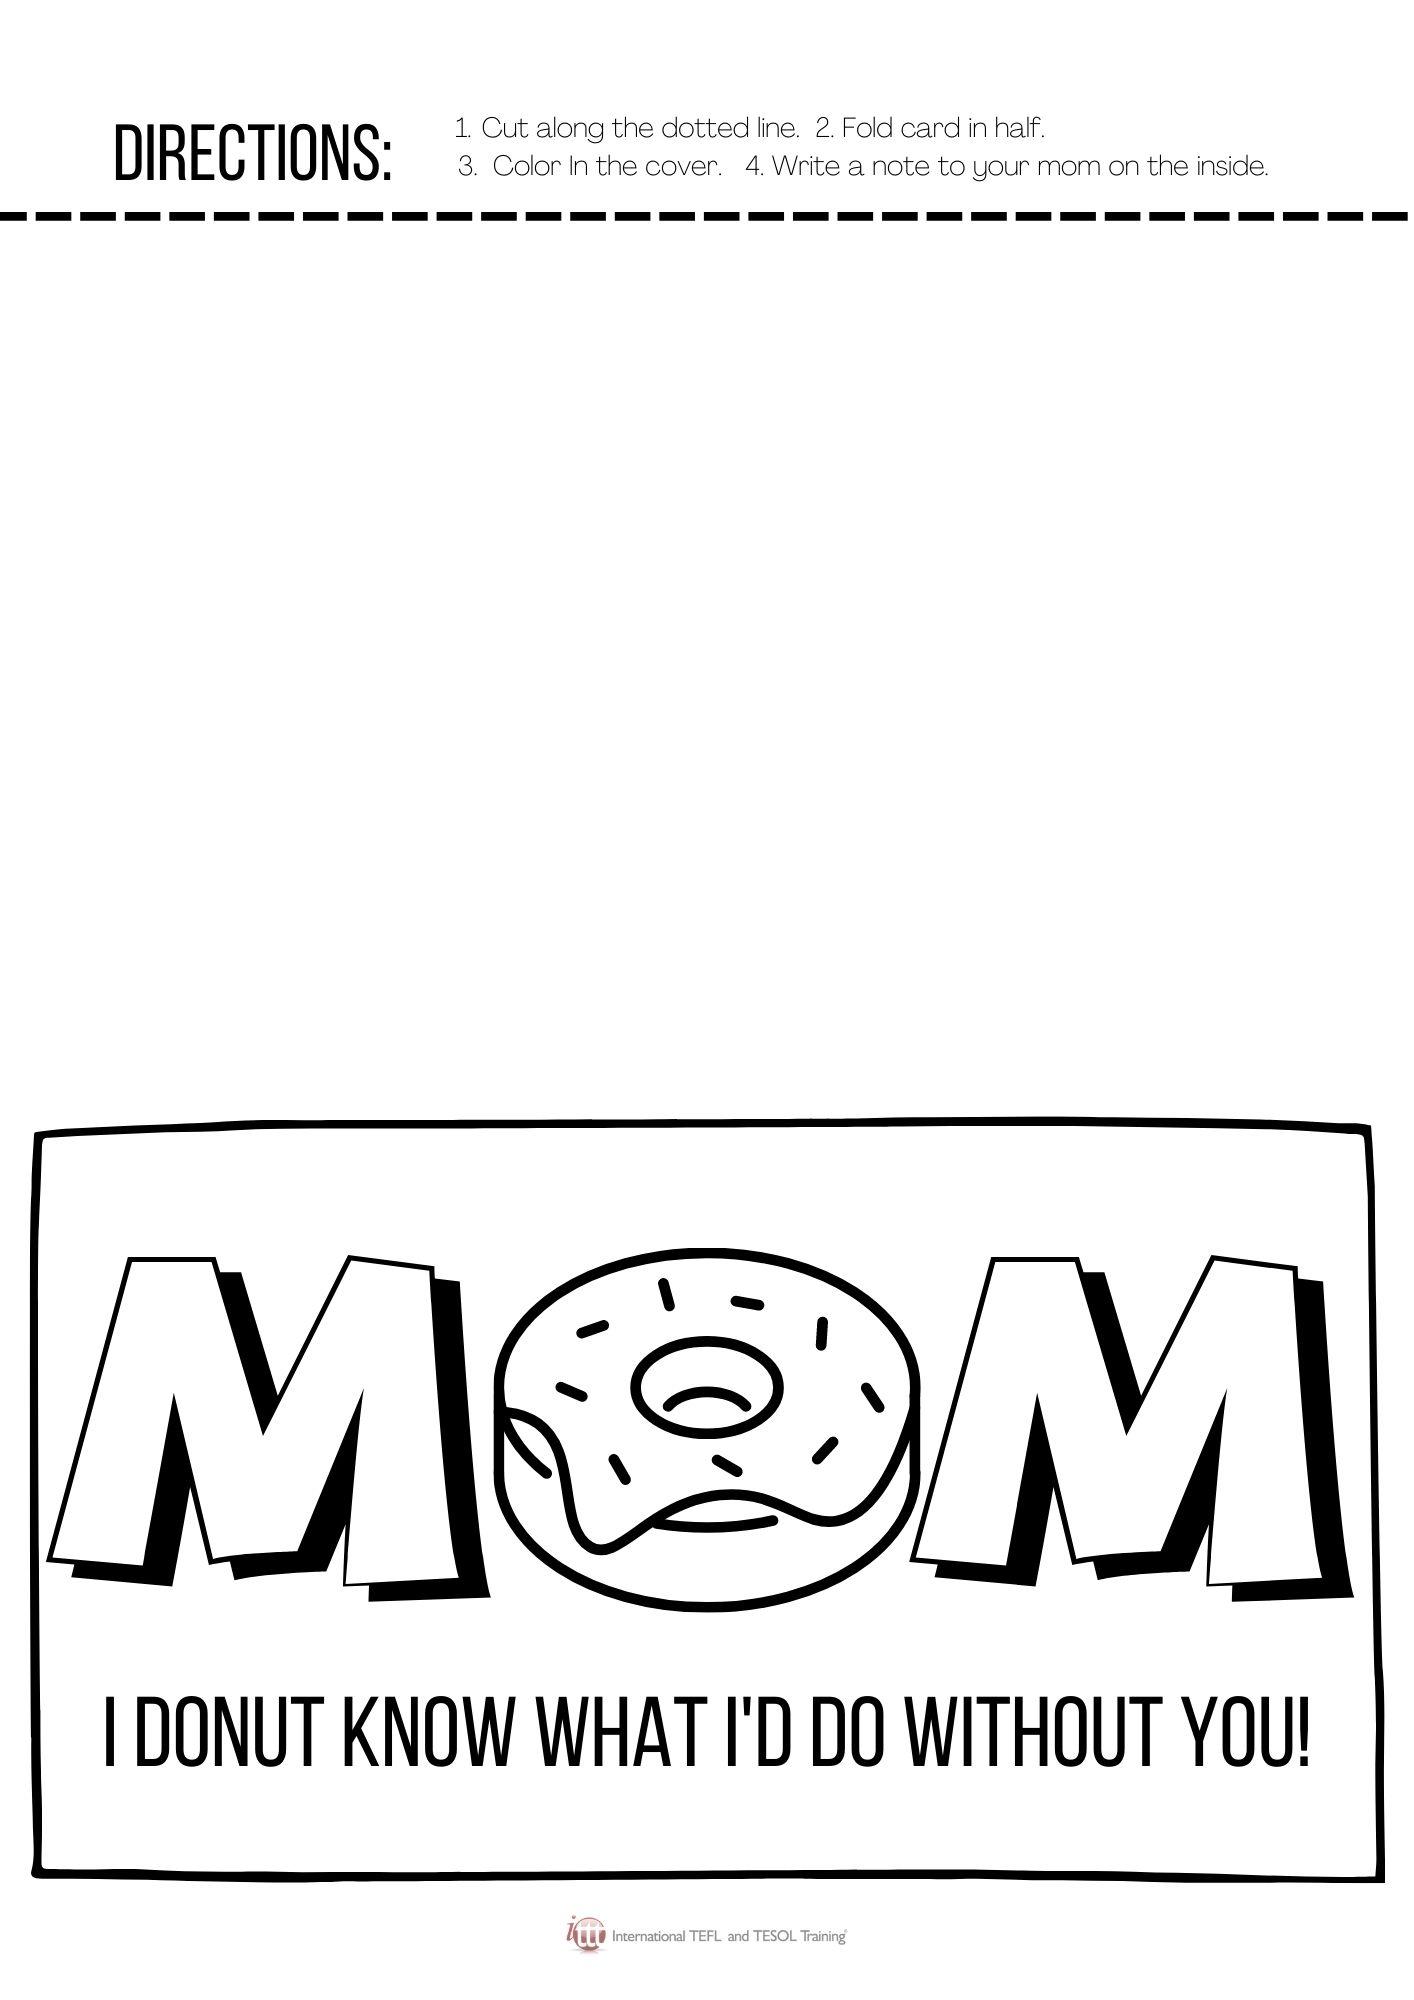 Grammar Corner Mother's Day Card